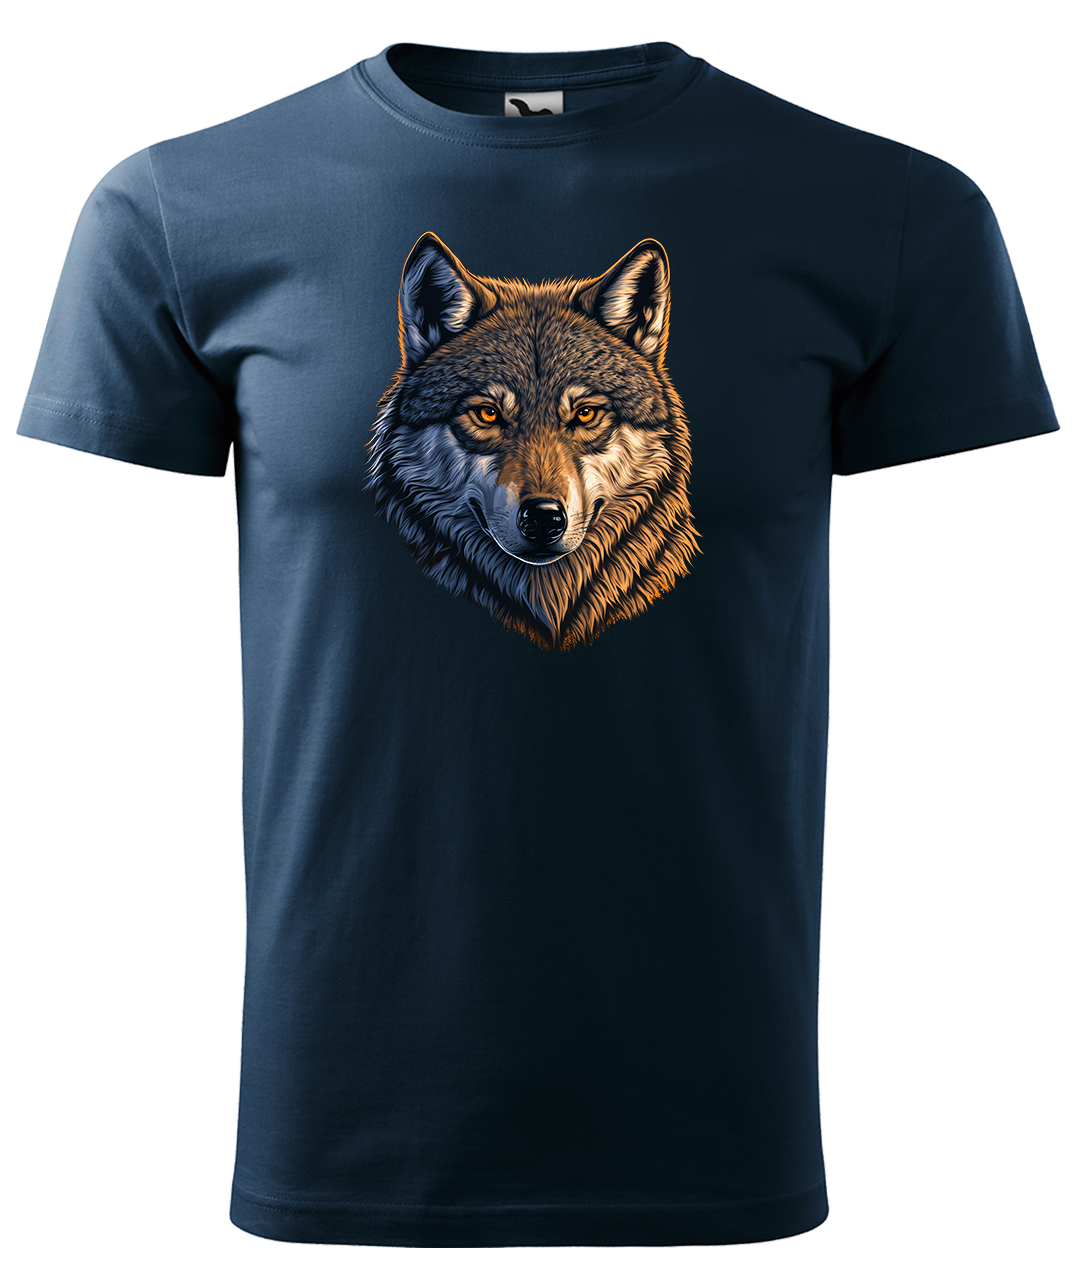 Dětské tričko s vlkem - Hlava vlka Velikost: 8 let / 134 cm, Barva: Námořní modrá (02), Délka rukávu: Krátký rukáv